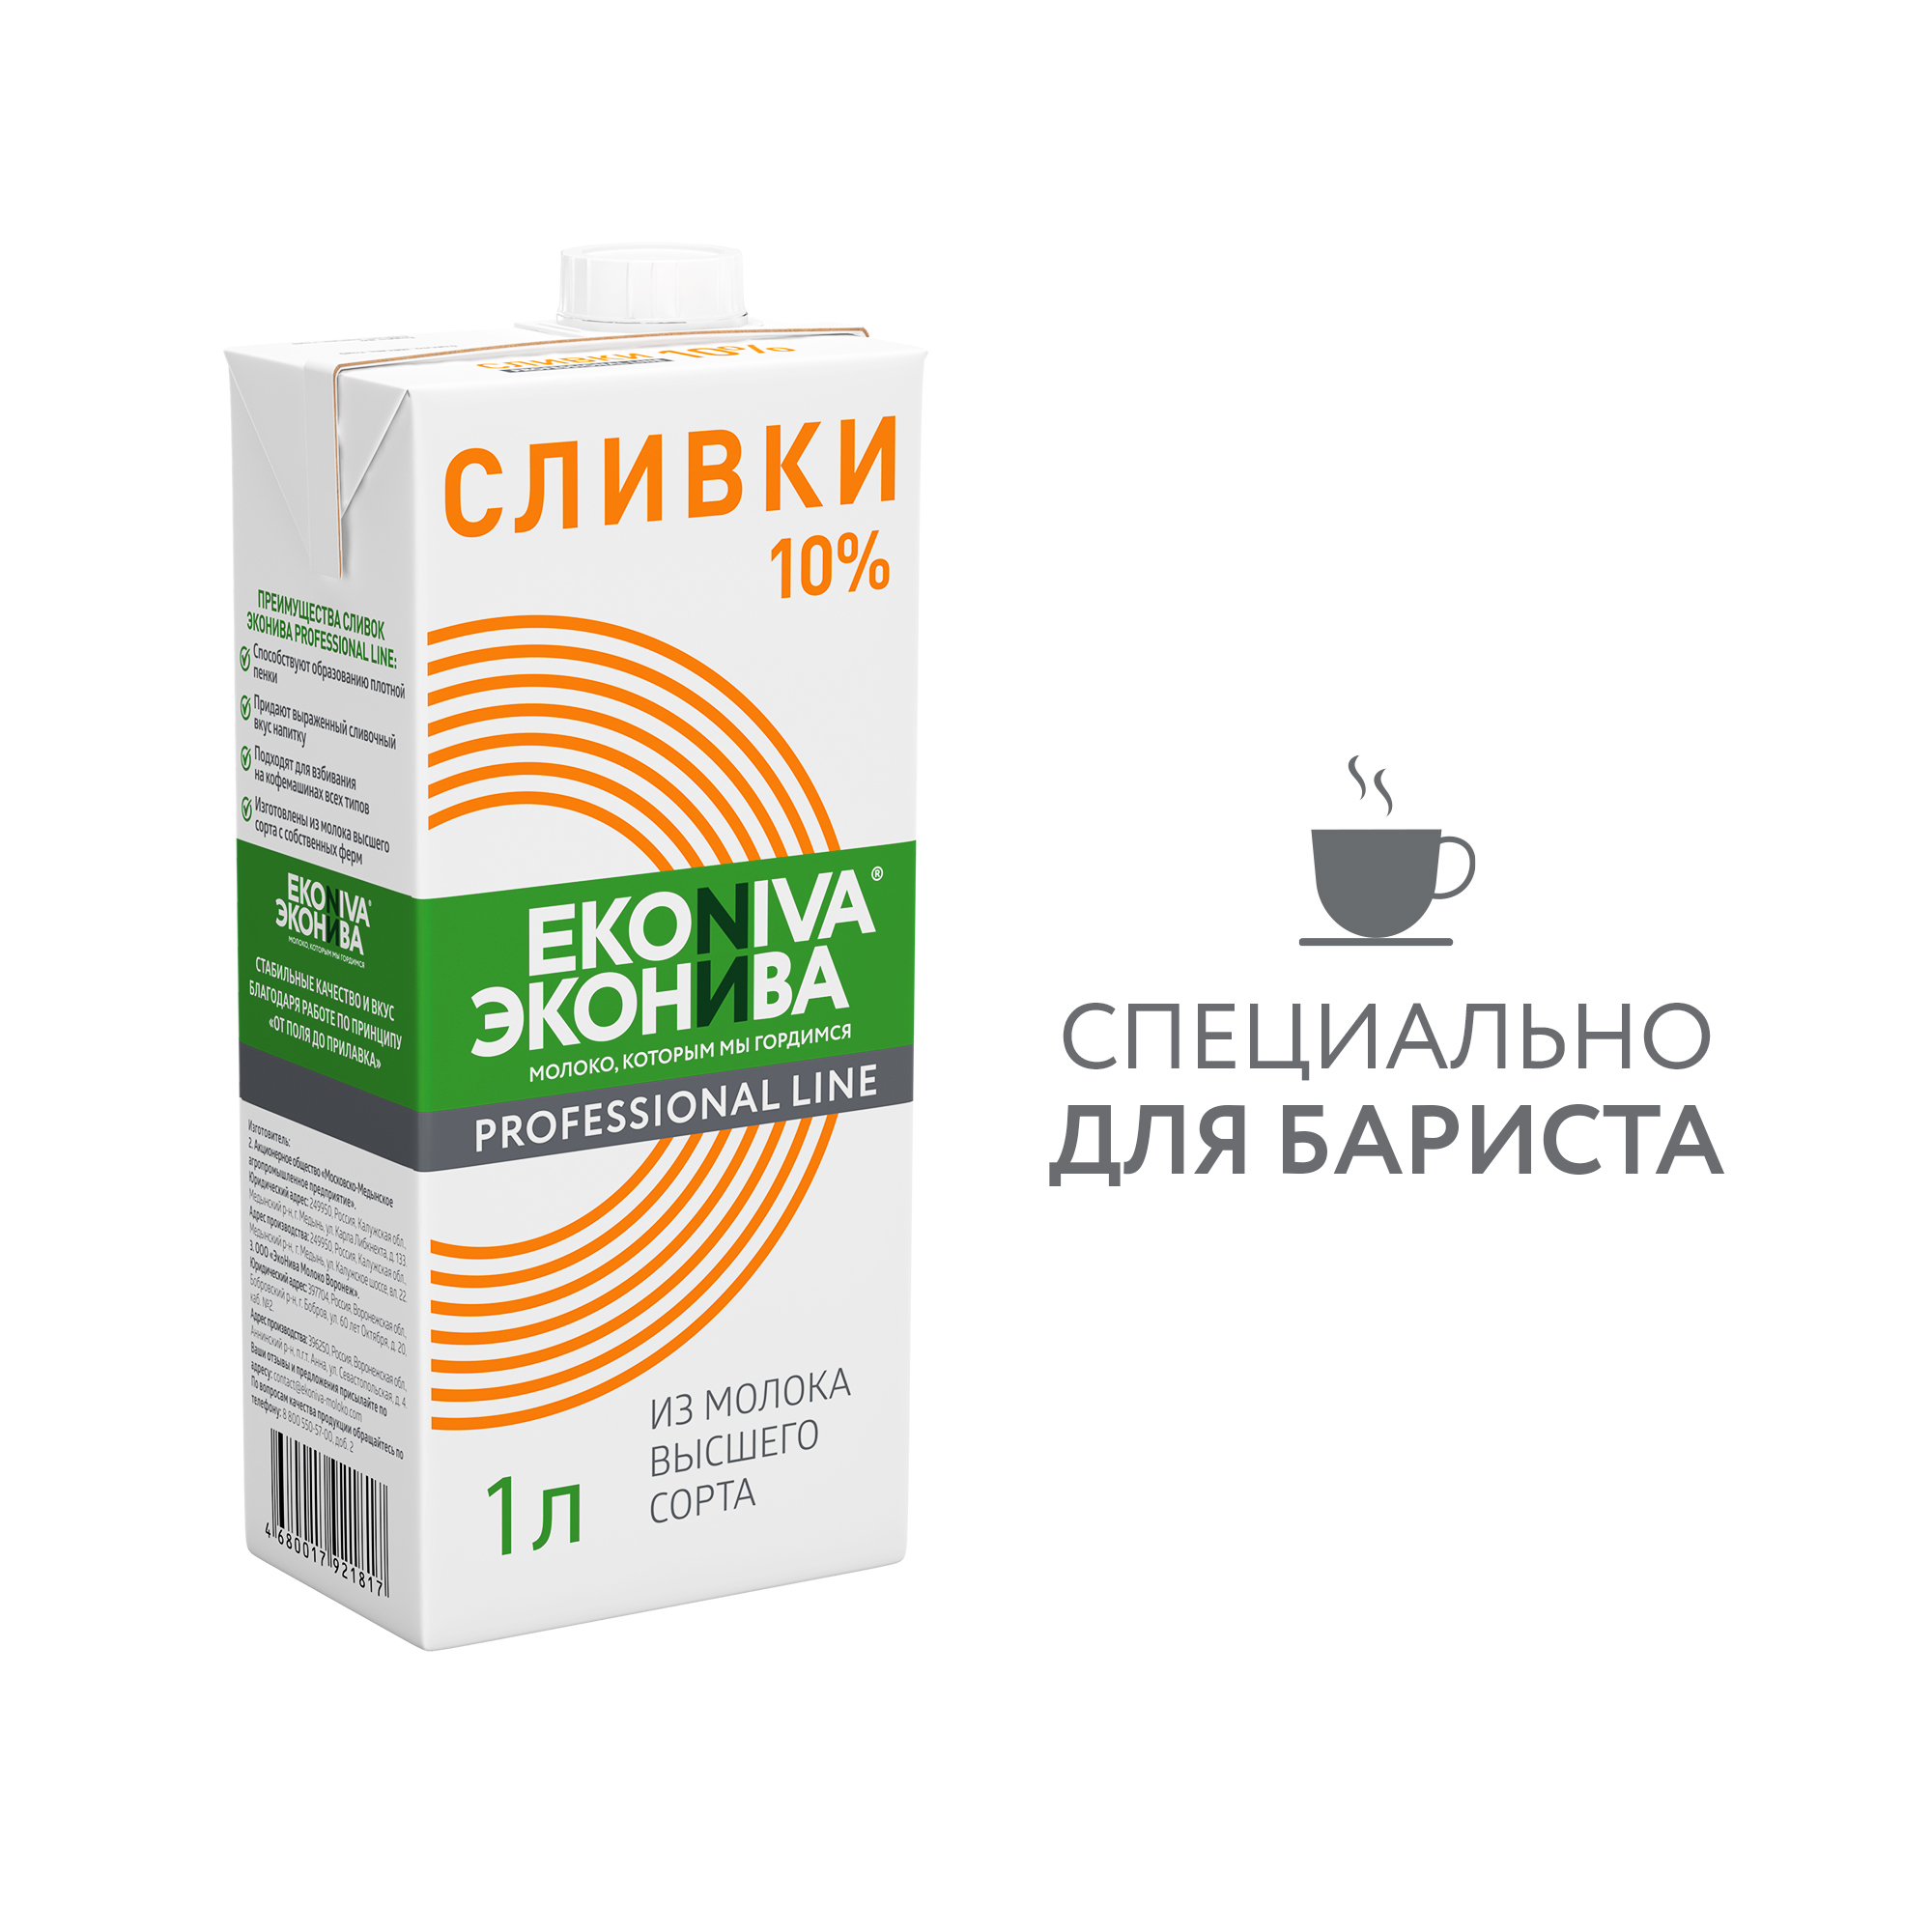 Сливки питьевые ЭкоНива Professional Line ультрапастеризованные 10% 1 л - купить в Мегамаркет Москва Пушкино, цена на Мегамаркет